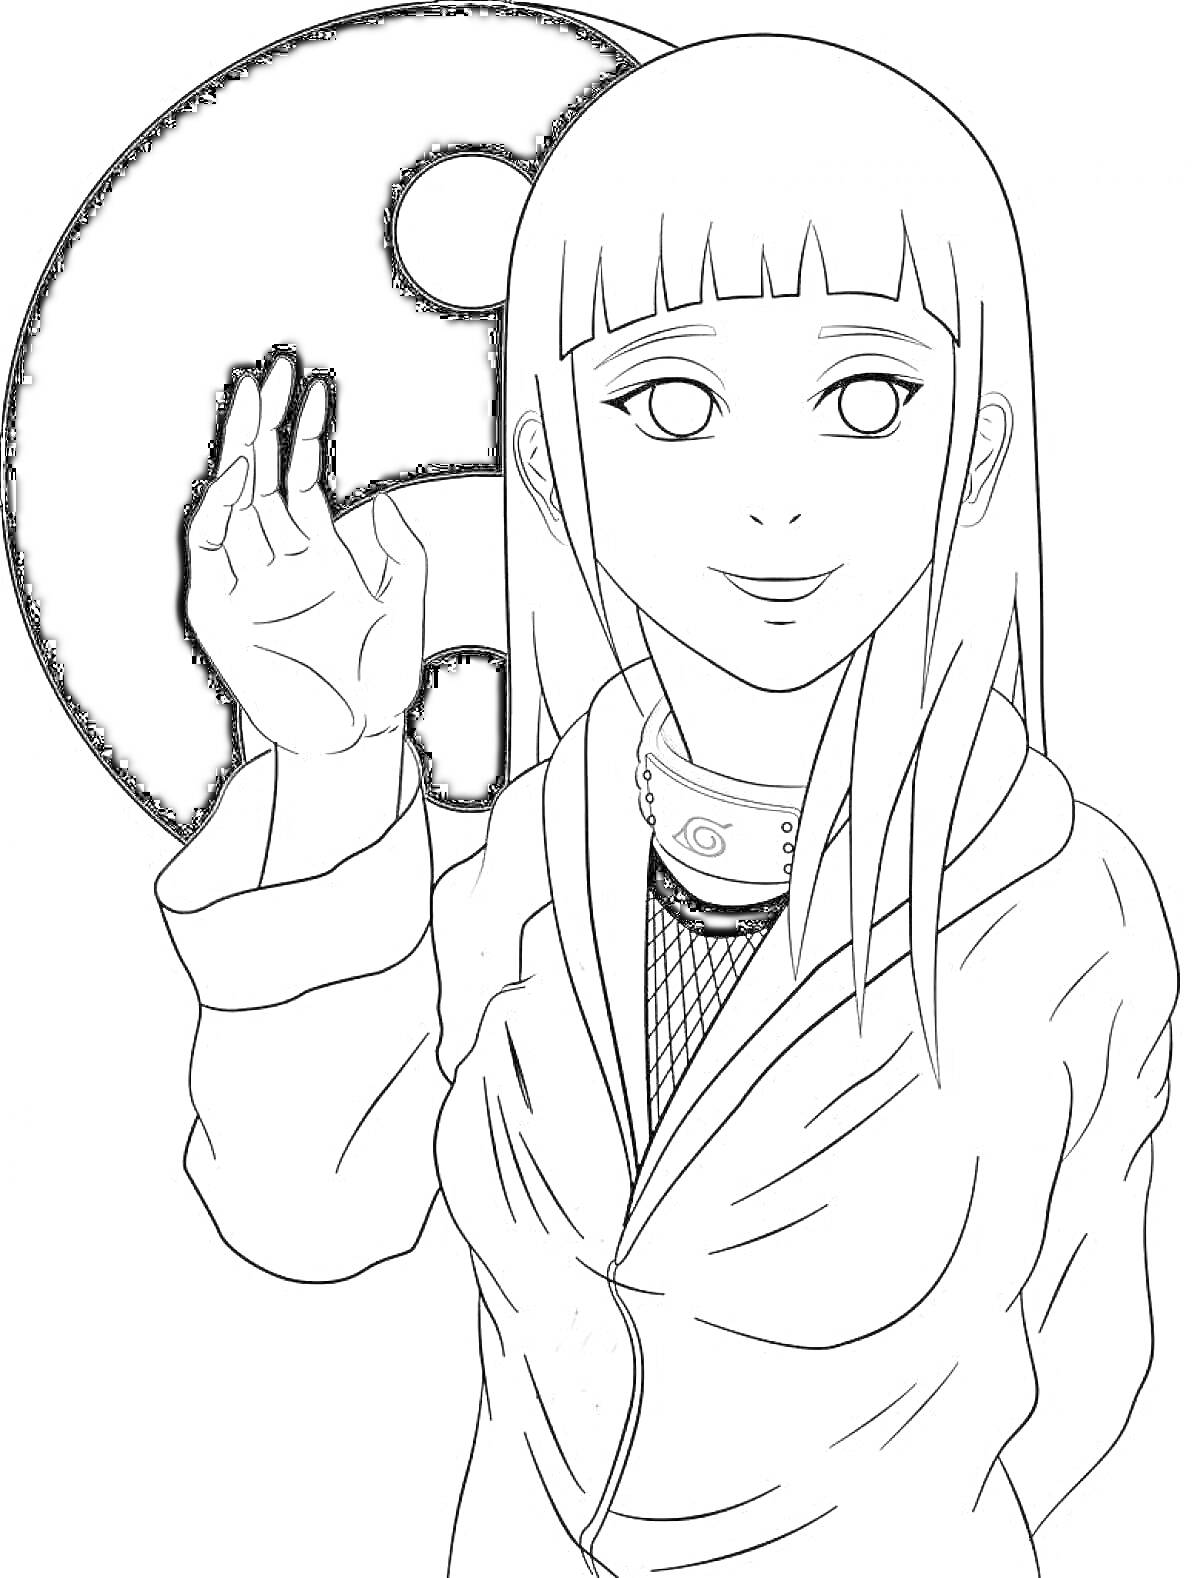 Раскраска Девушка с длинными волосами, поднявшая руку перед символом Инь-Ян